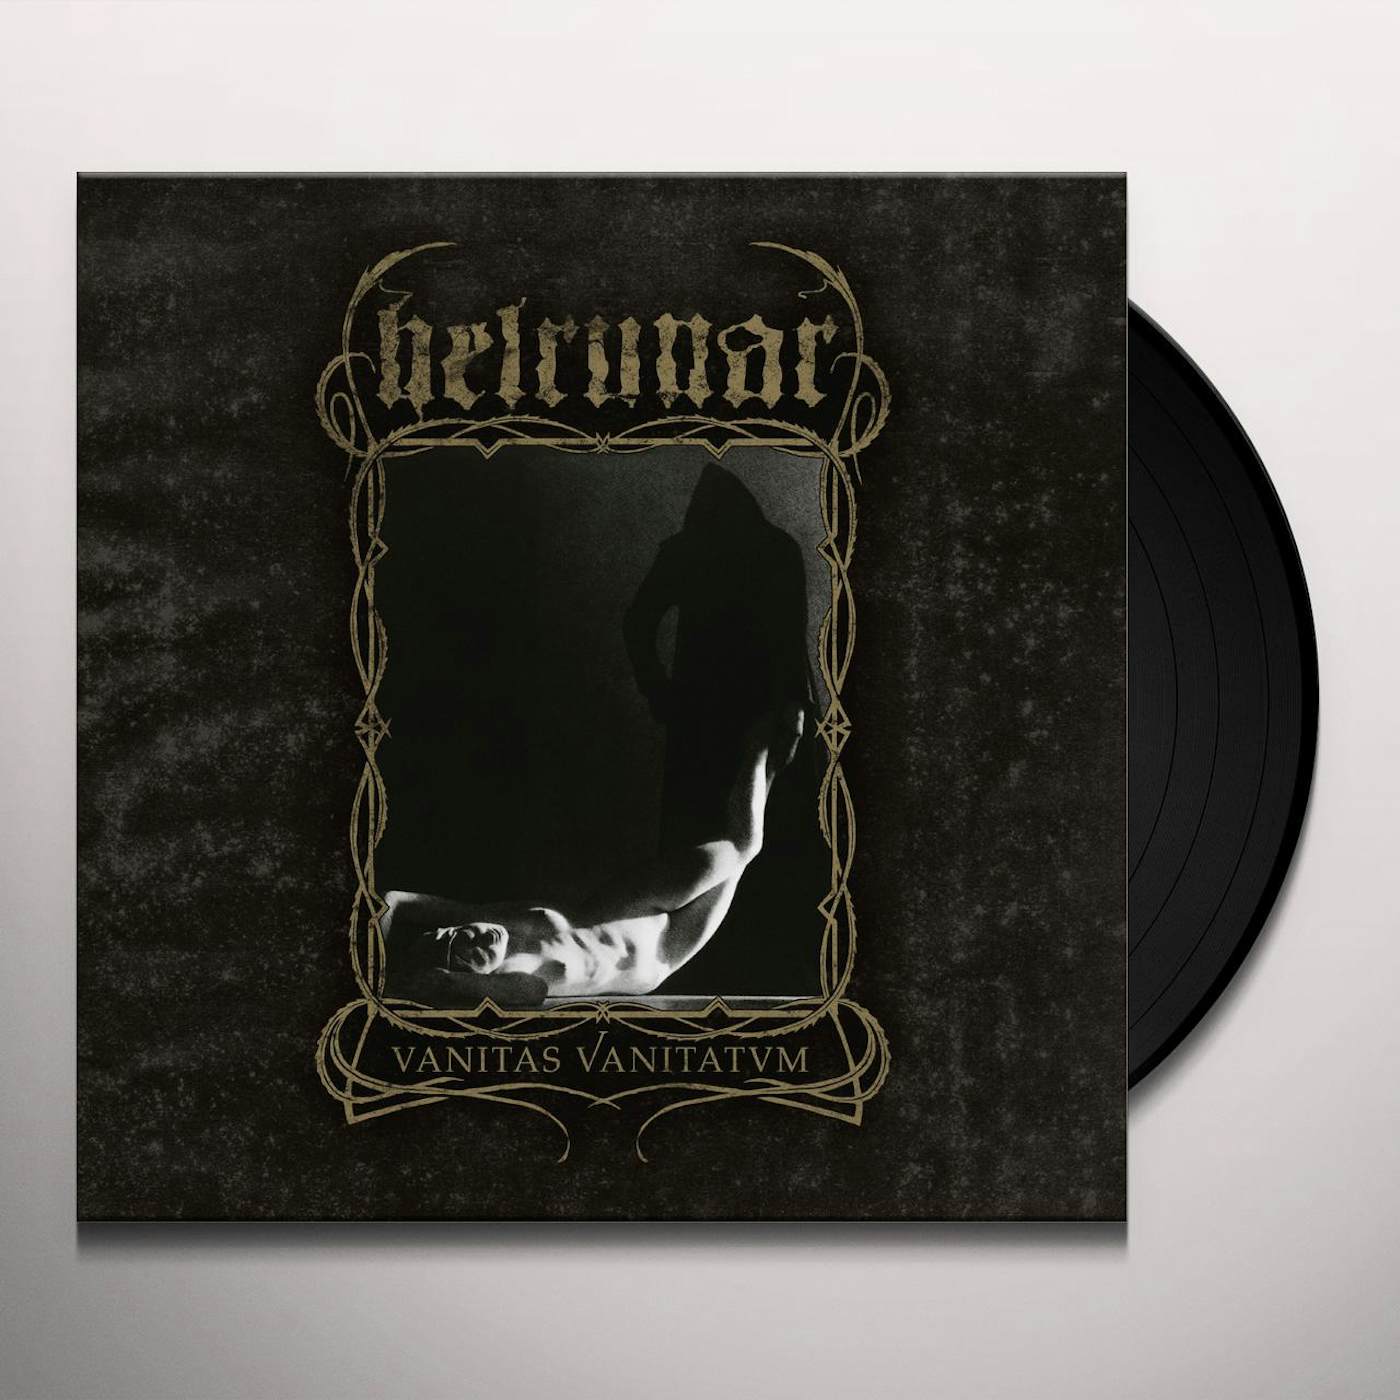 Helrunar Vanitas Vanitatvm Vinyl Record